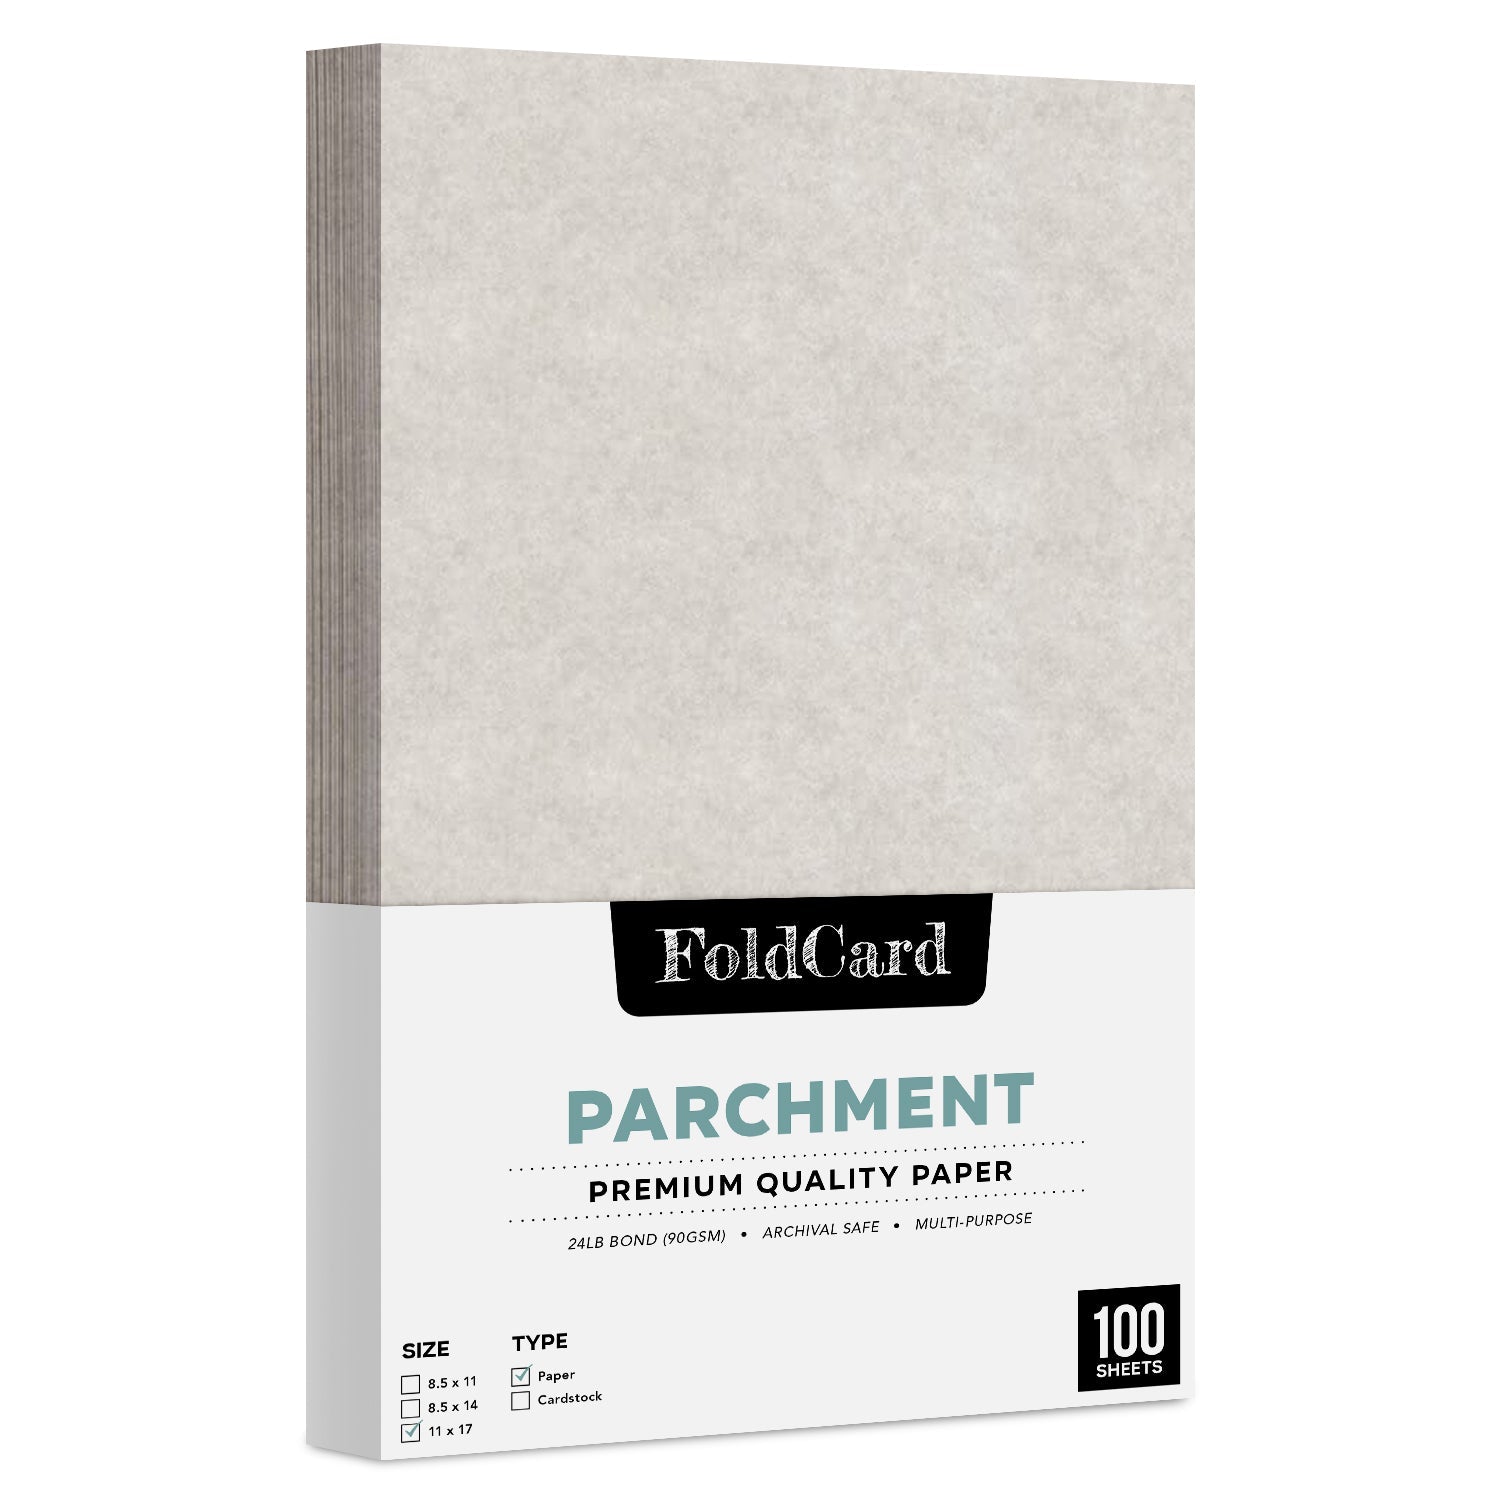 11 x 17 Parchment Paper 24lb Text 90gsm 100 Sheets FoldCard